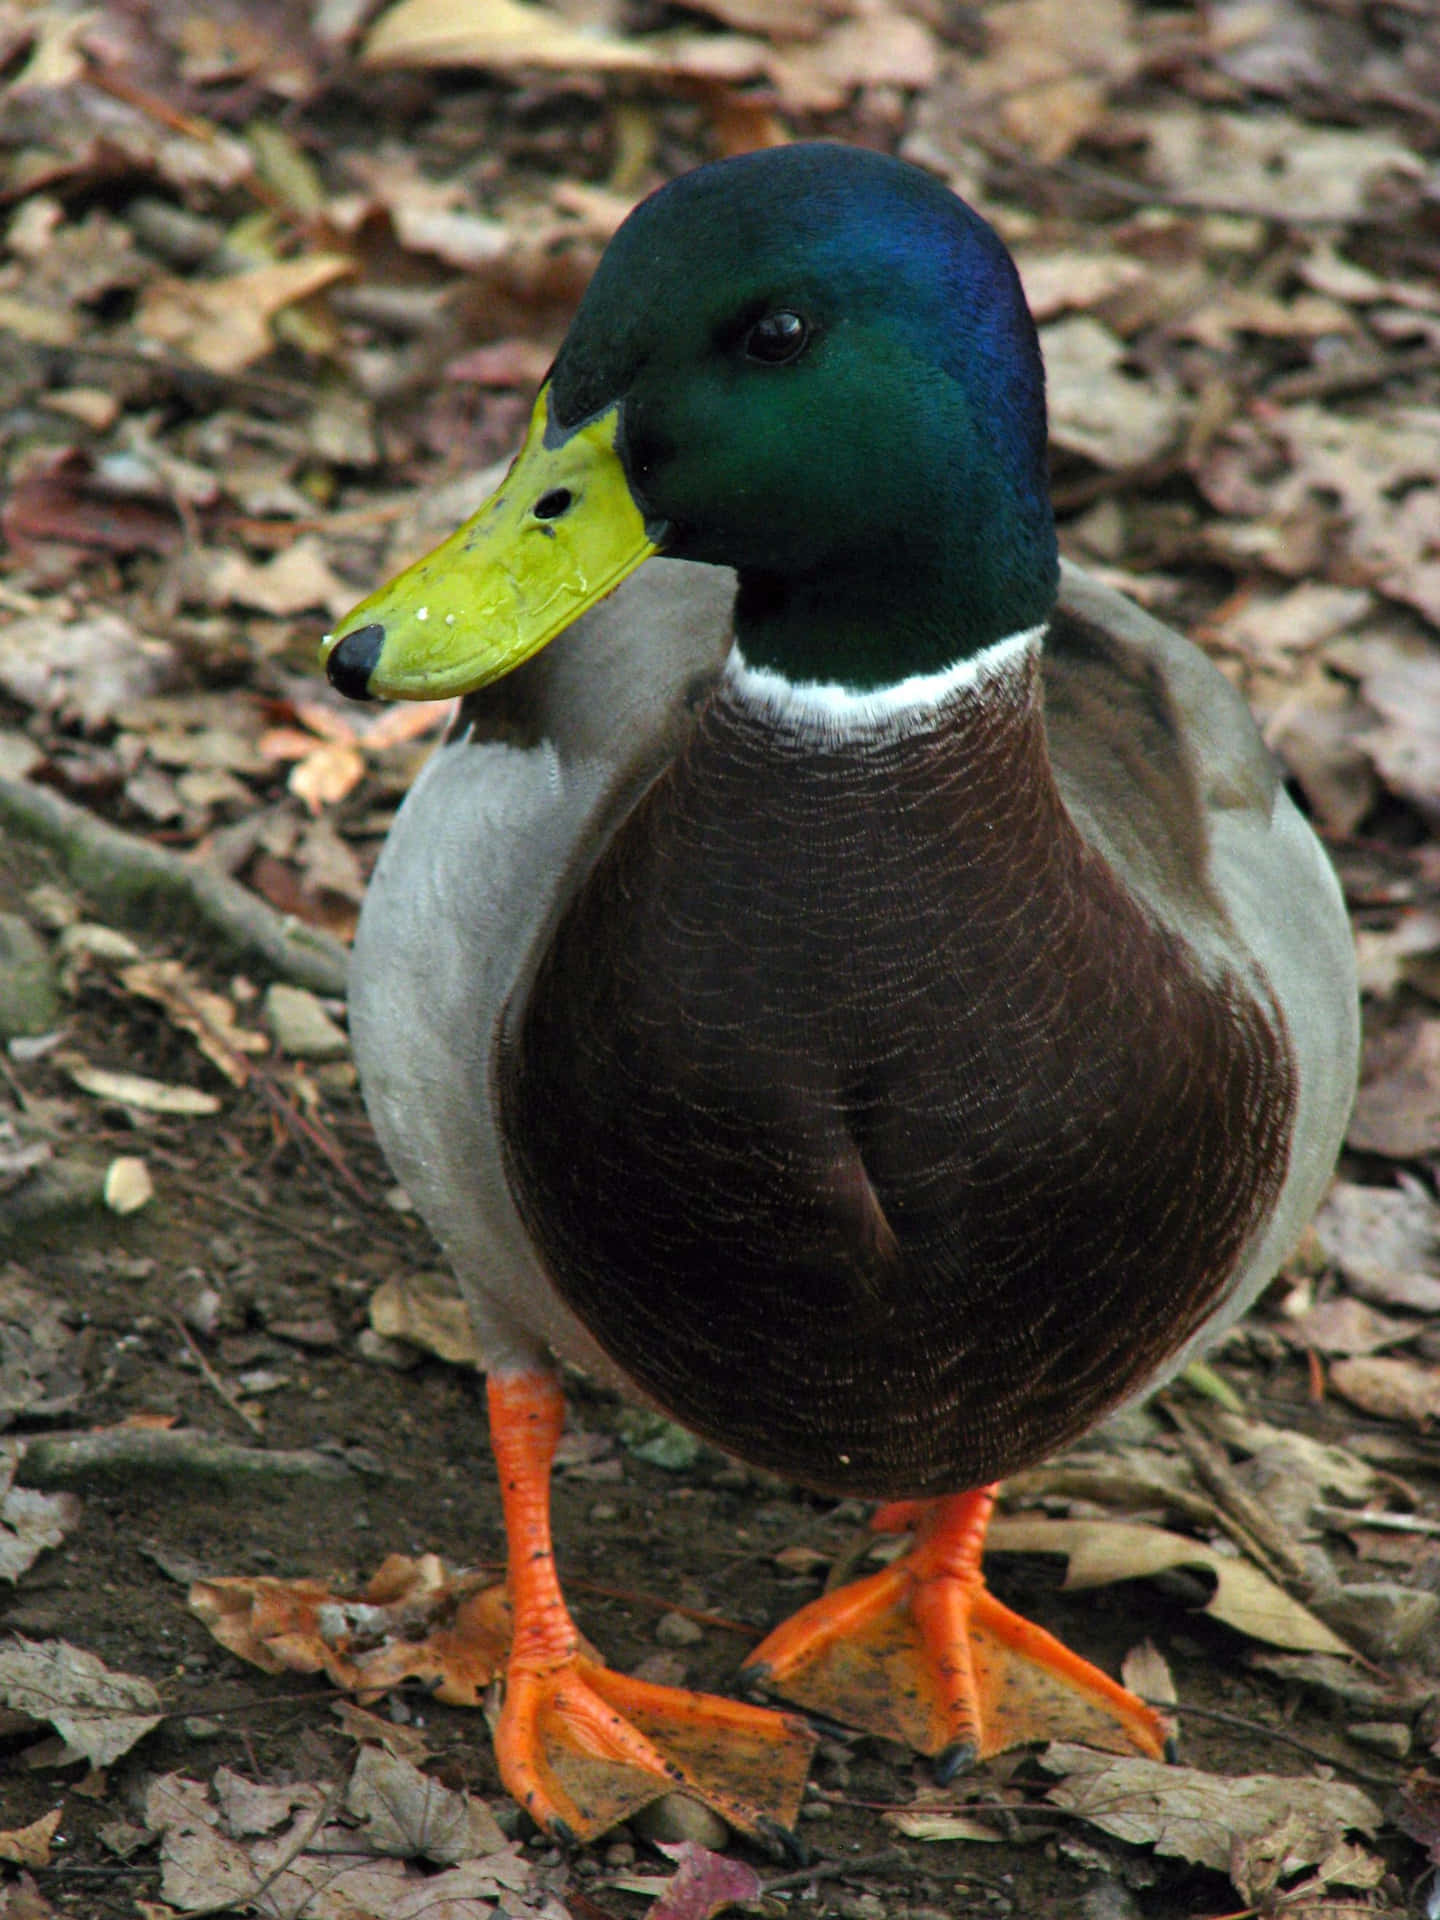 A beautiful Mallard Duck taking a rest